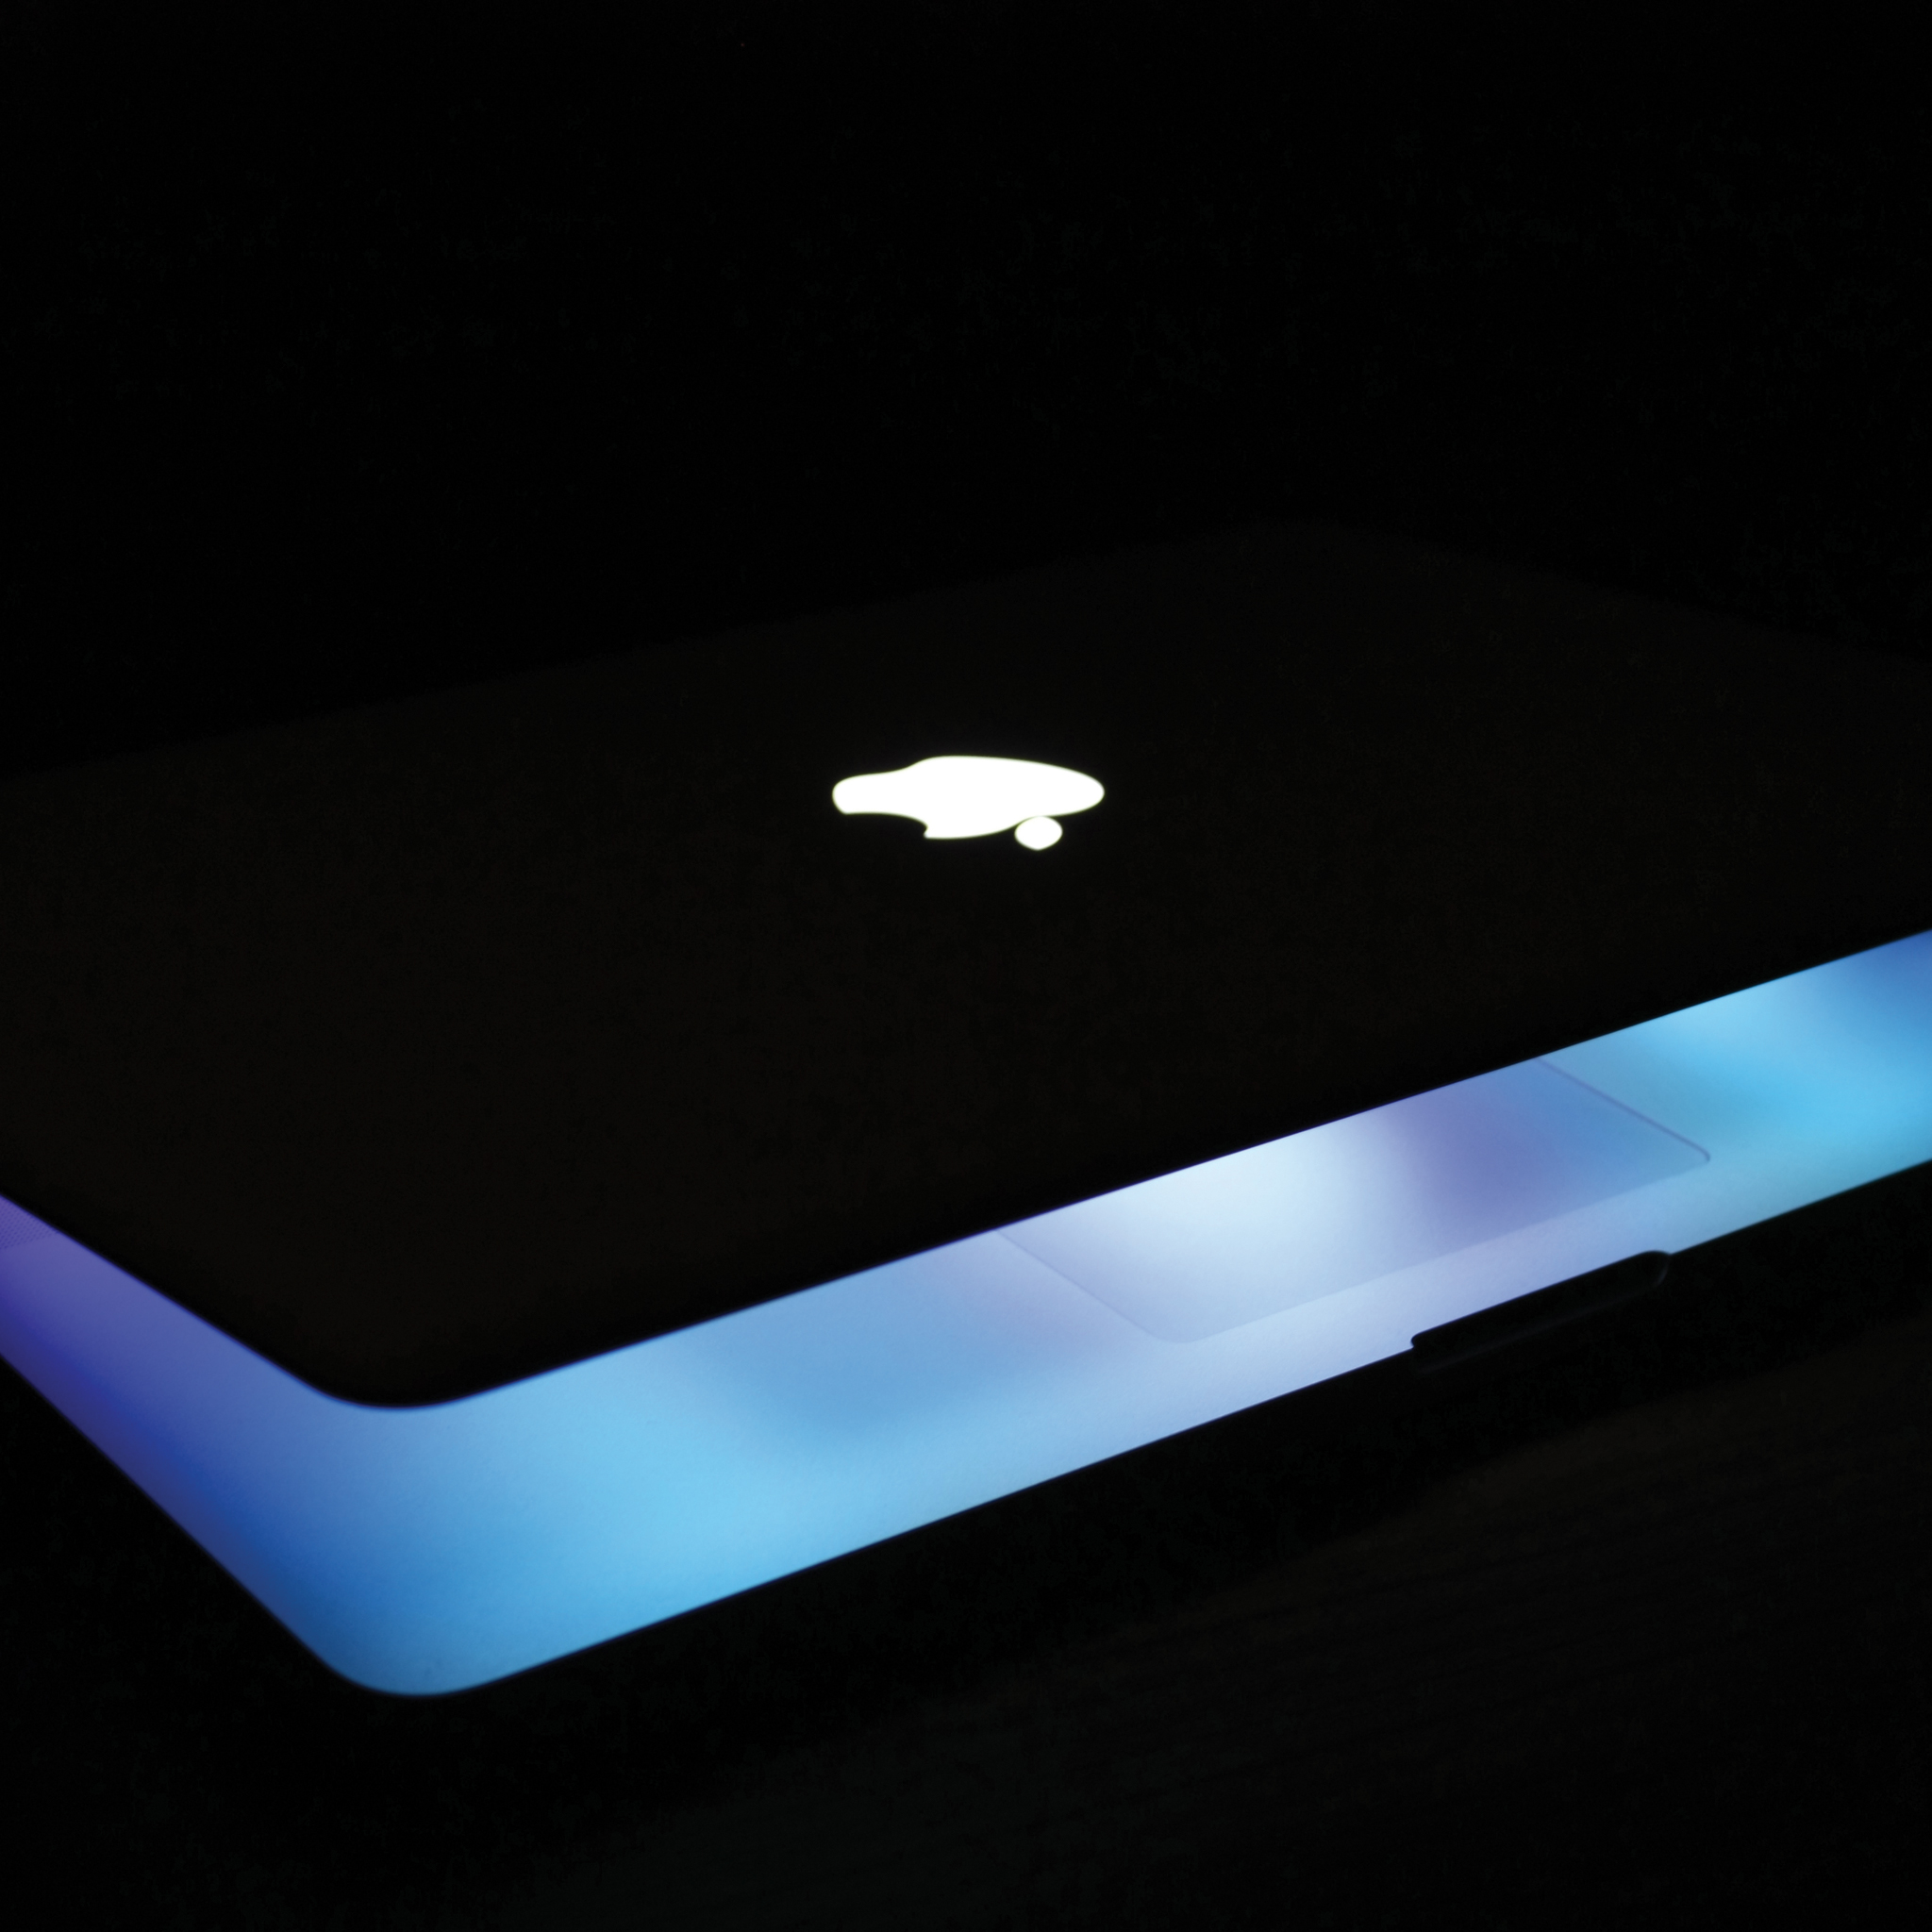 macbook pro wallpaper,blue,light,lighting,gadget,technology